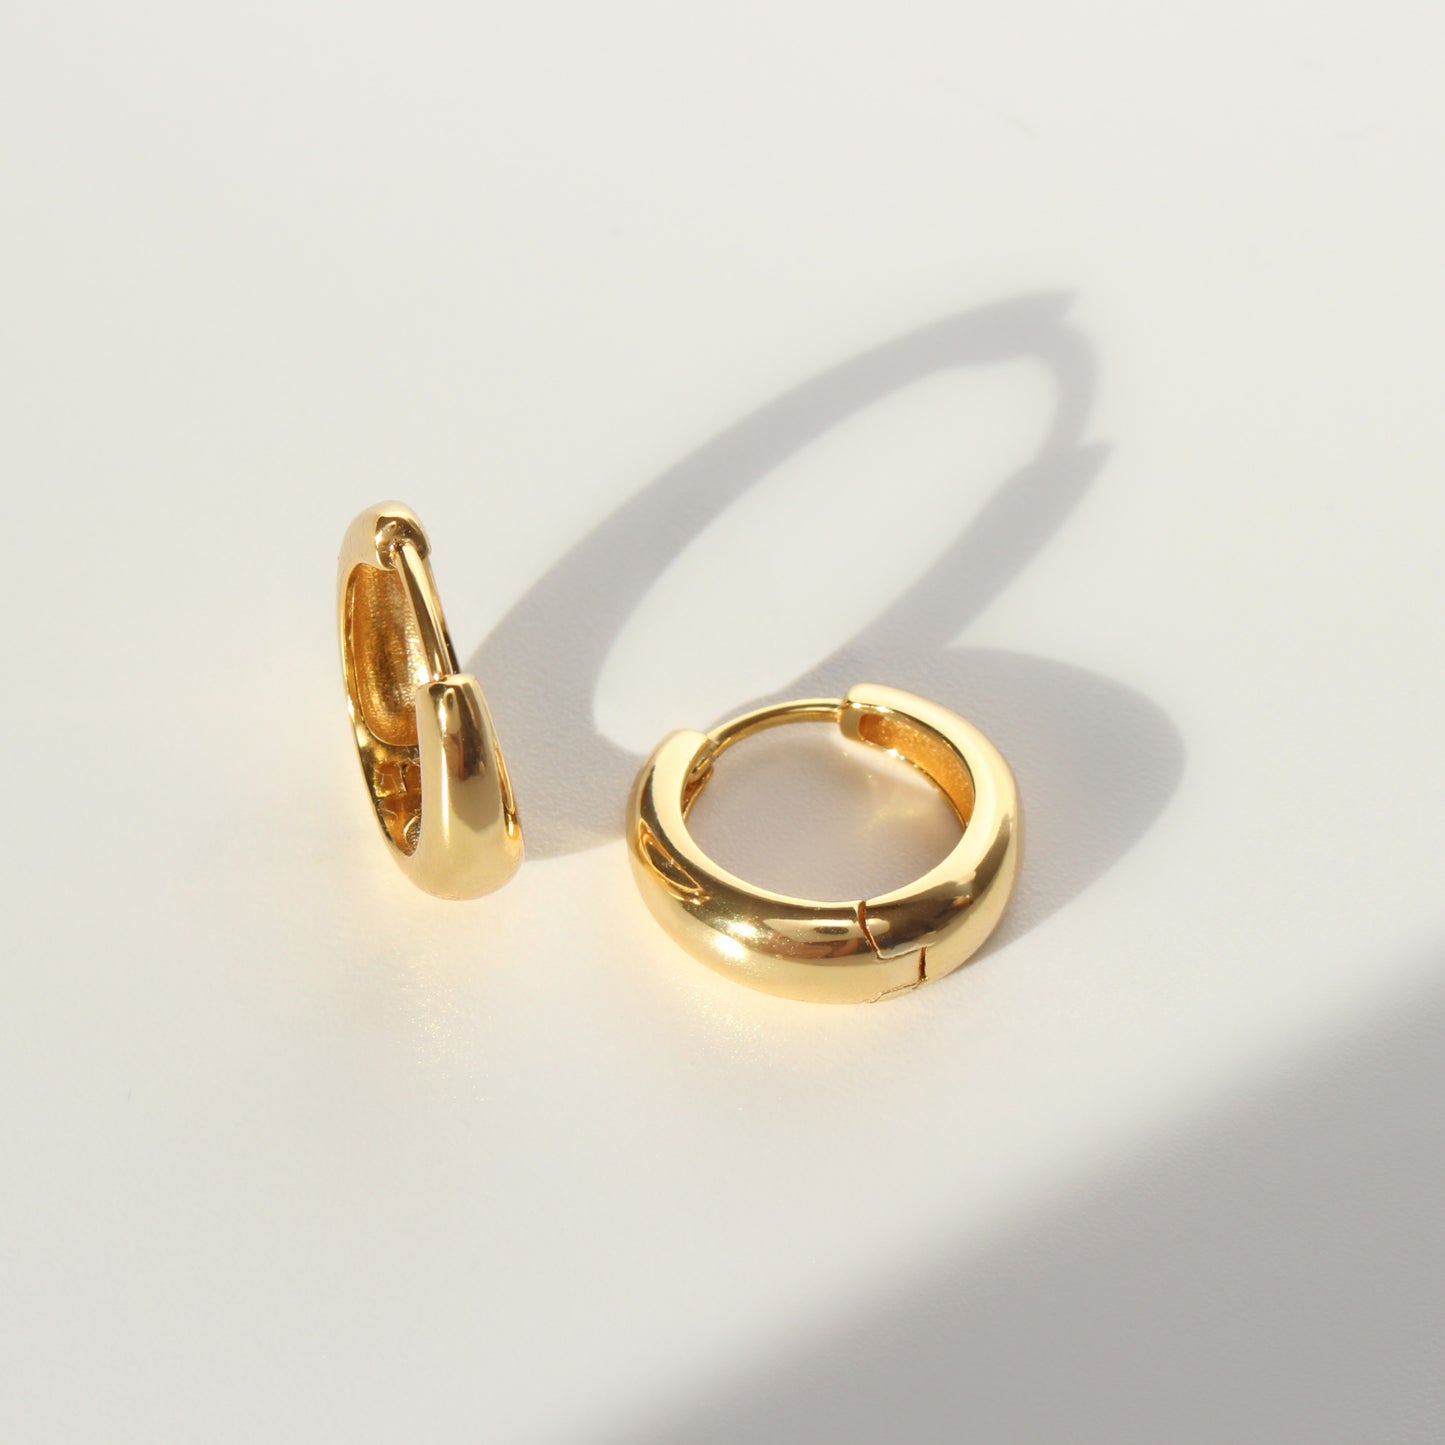 18 karat Gold Vermeil Hoops Earrings ∙ New version ∙ Huggies Gold Hoop ∙ 18mm Outside ∙ Mother's Day Jewelry ∙ Hypoallergenic ∙ WATERPROOF